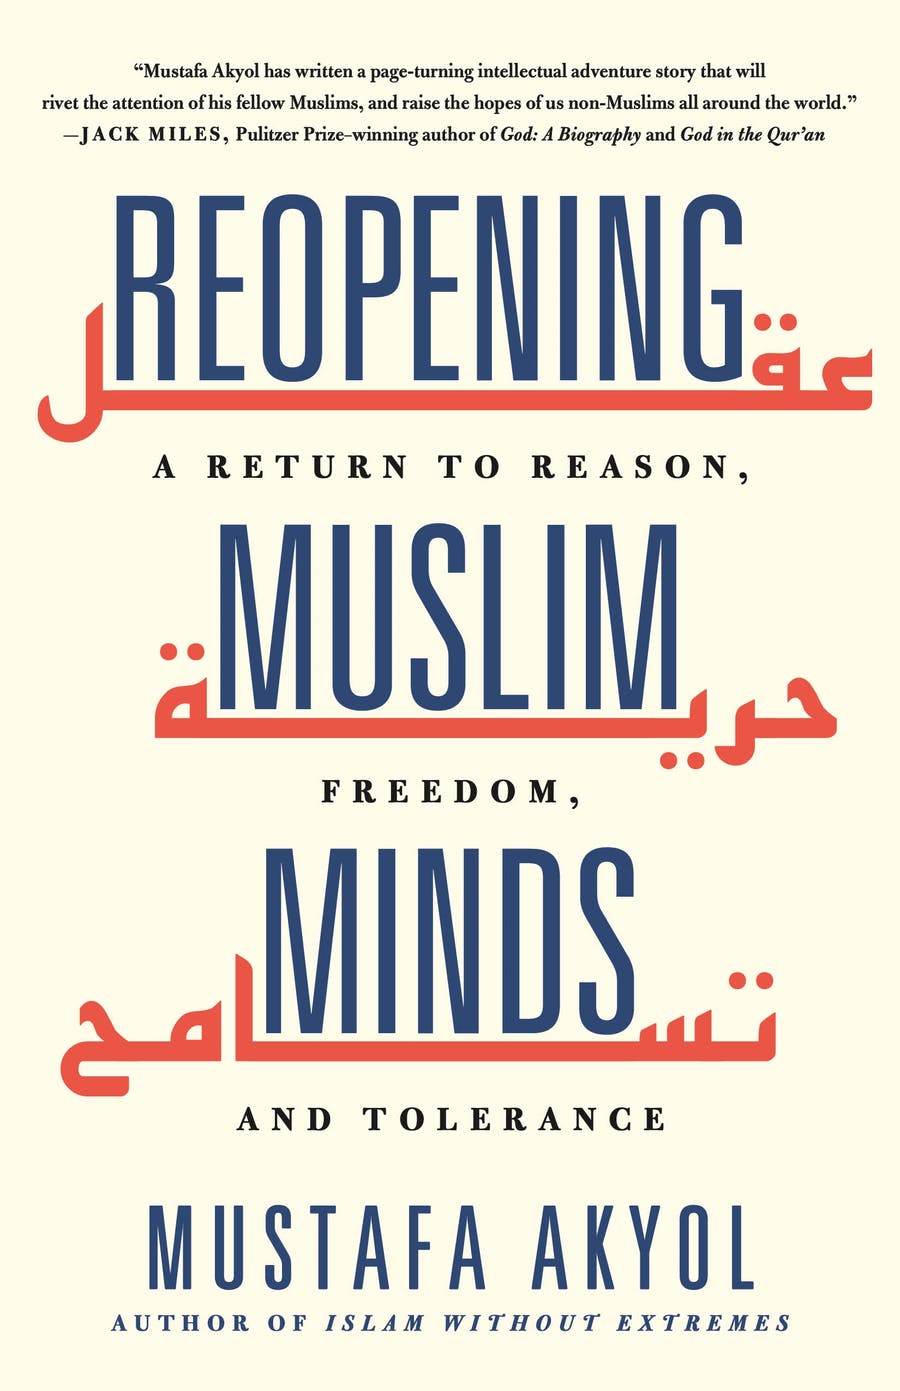 Buchcover von Msuata Akyol, Reopenng Muslim Minds. A Return to Reason, Freedom and Tolerance, St. Martins Essentials 2021; Quelle: Verlag St. Martins Essentials